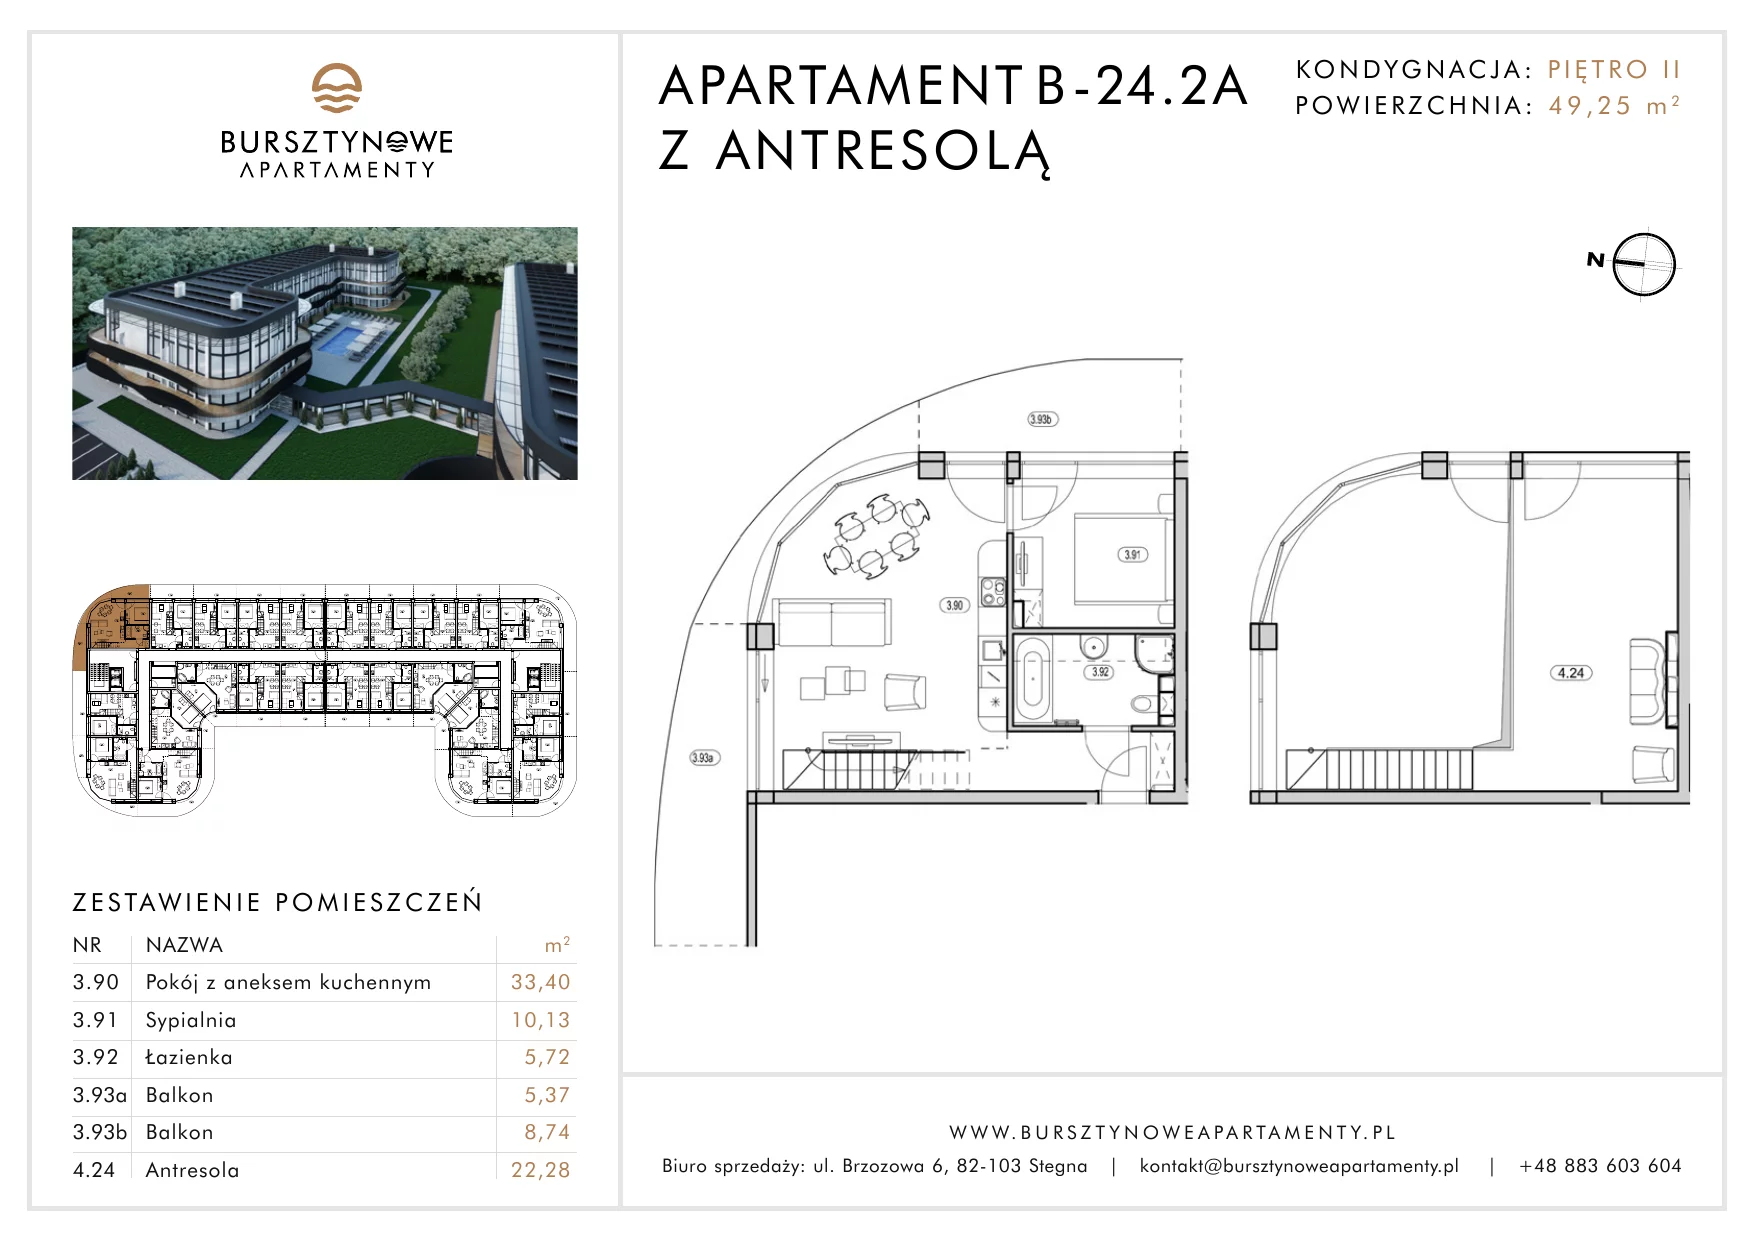 Apartament inwestycyjny 49,25 m², piętro 2, oferta nr B-24.2A, Bursztynowe Apartamenty, Stegna, ul. Brzozowa 6